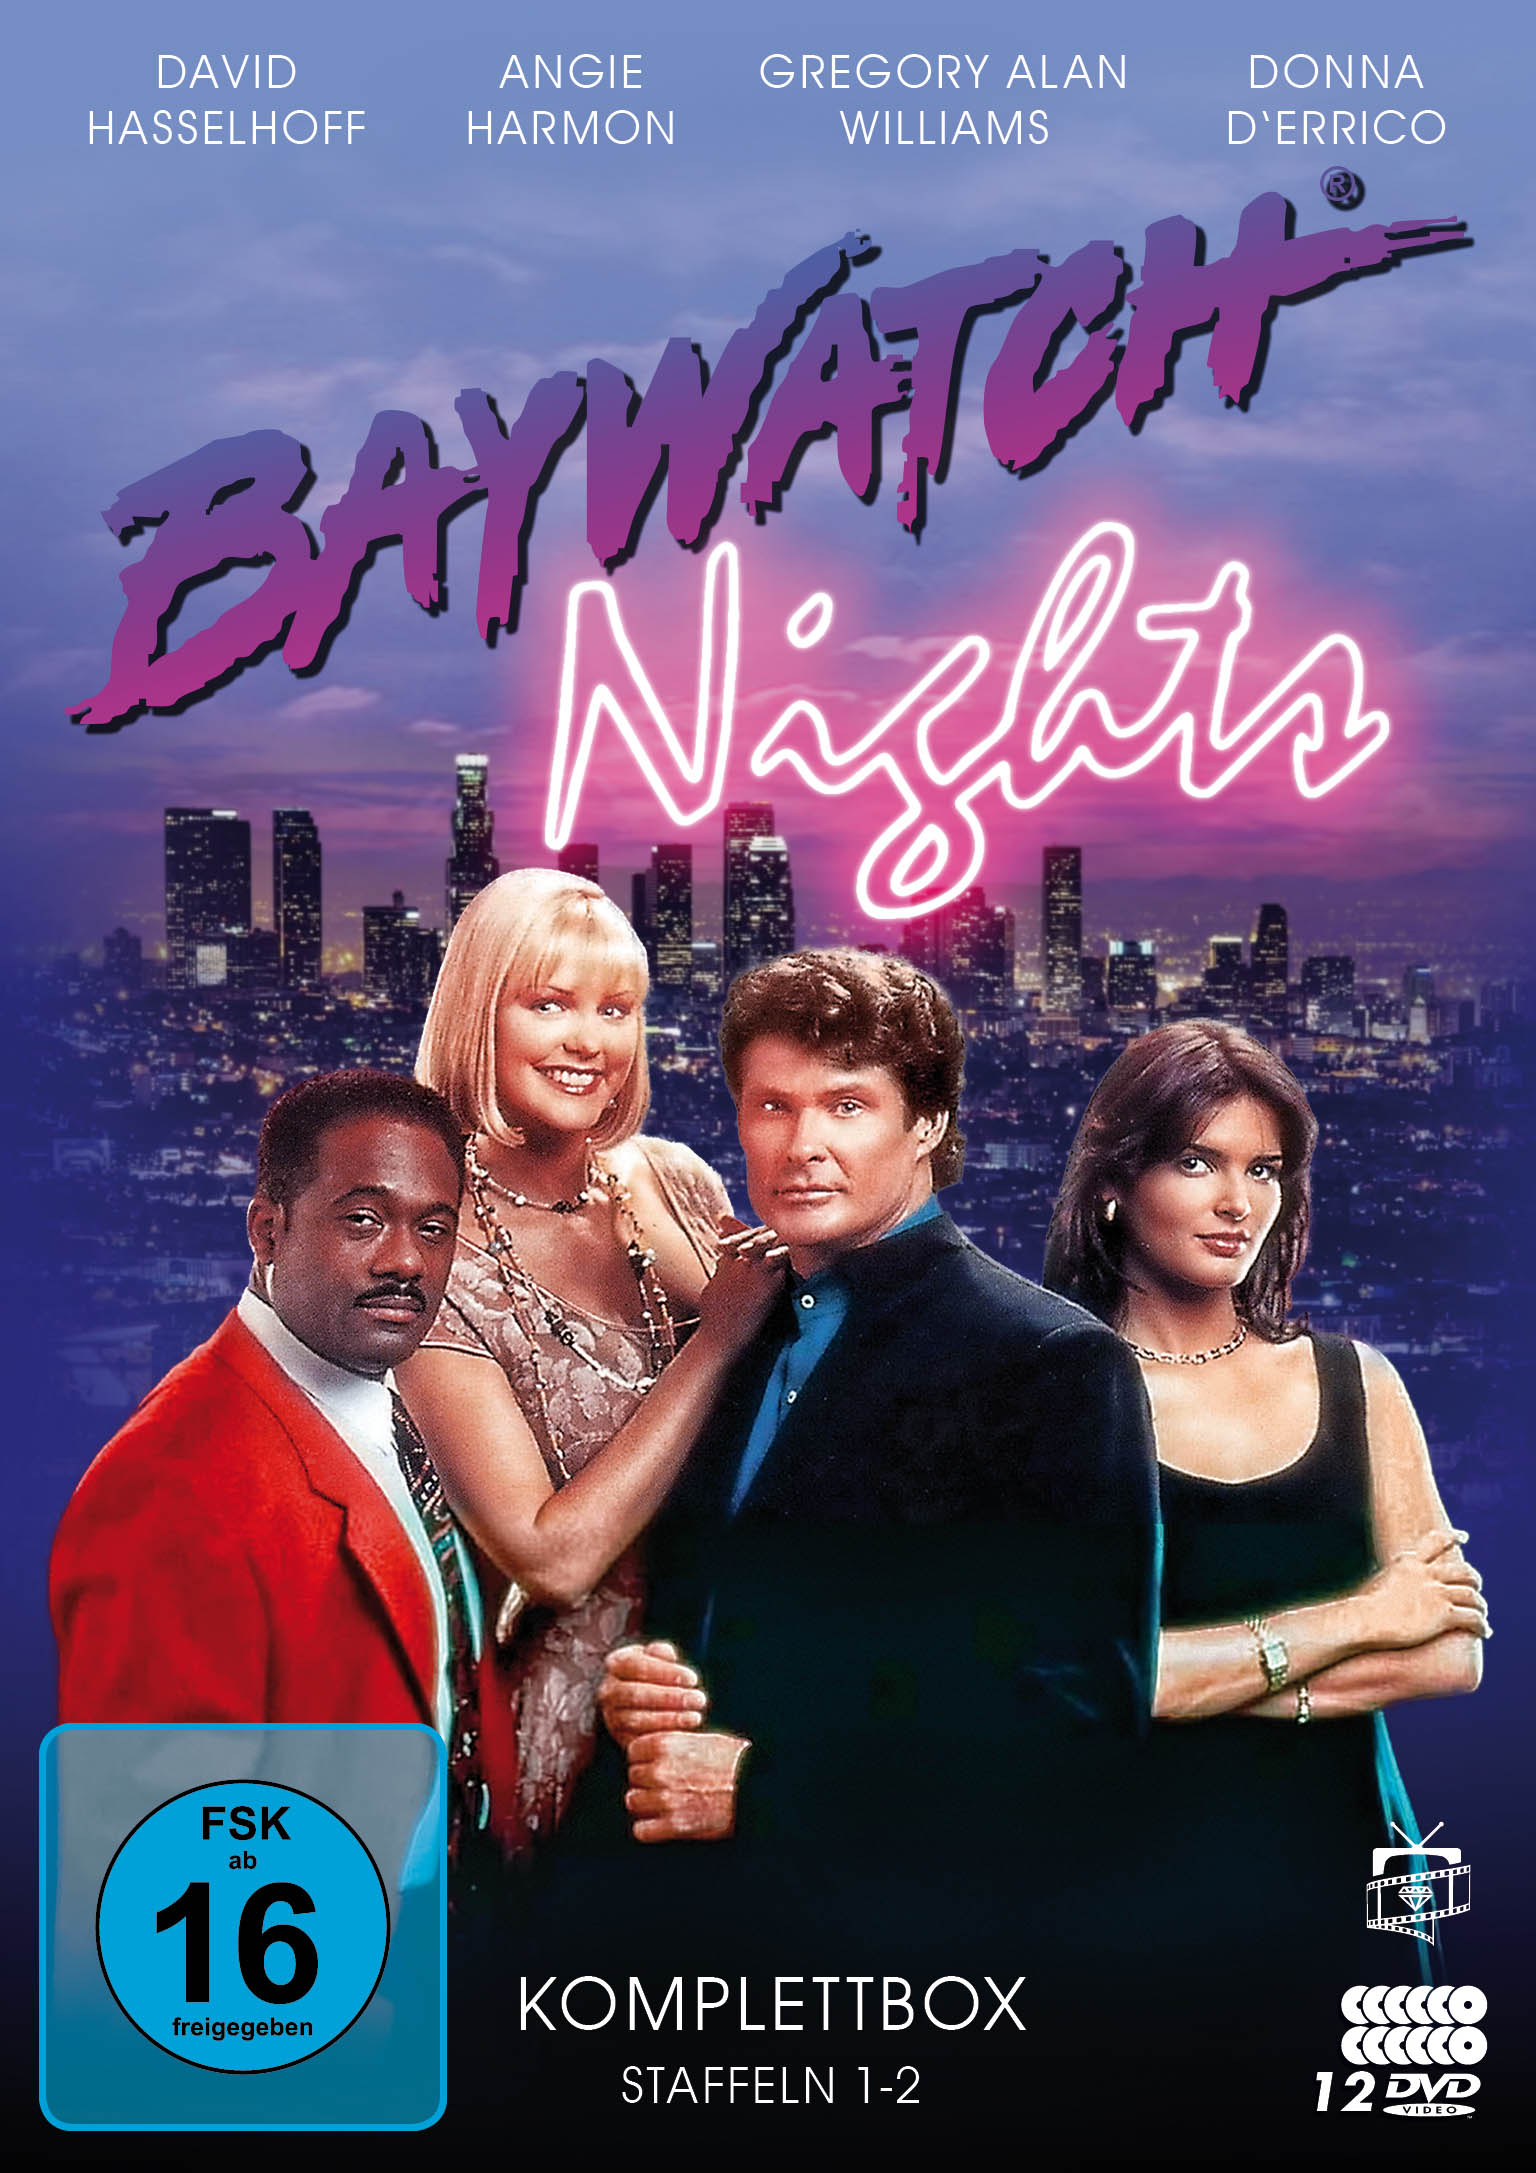 Baywatch Nights - Die Komplettbox: Staffeln 1-2 (12 DVDs)